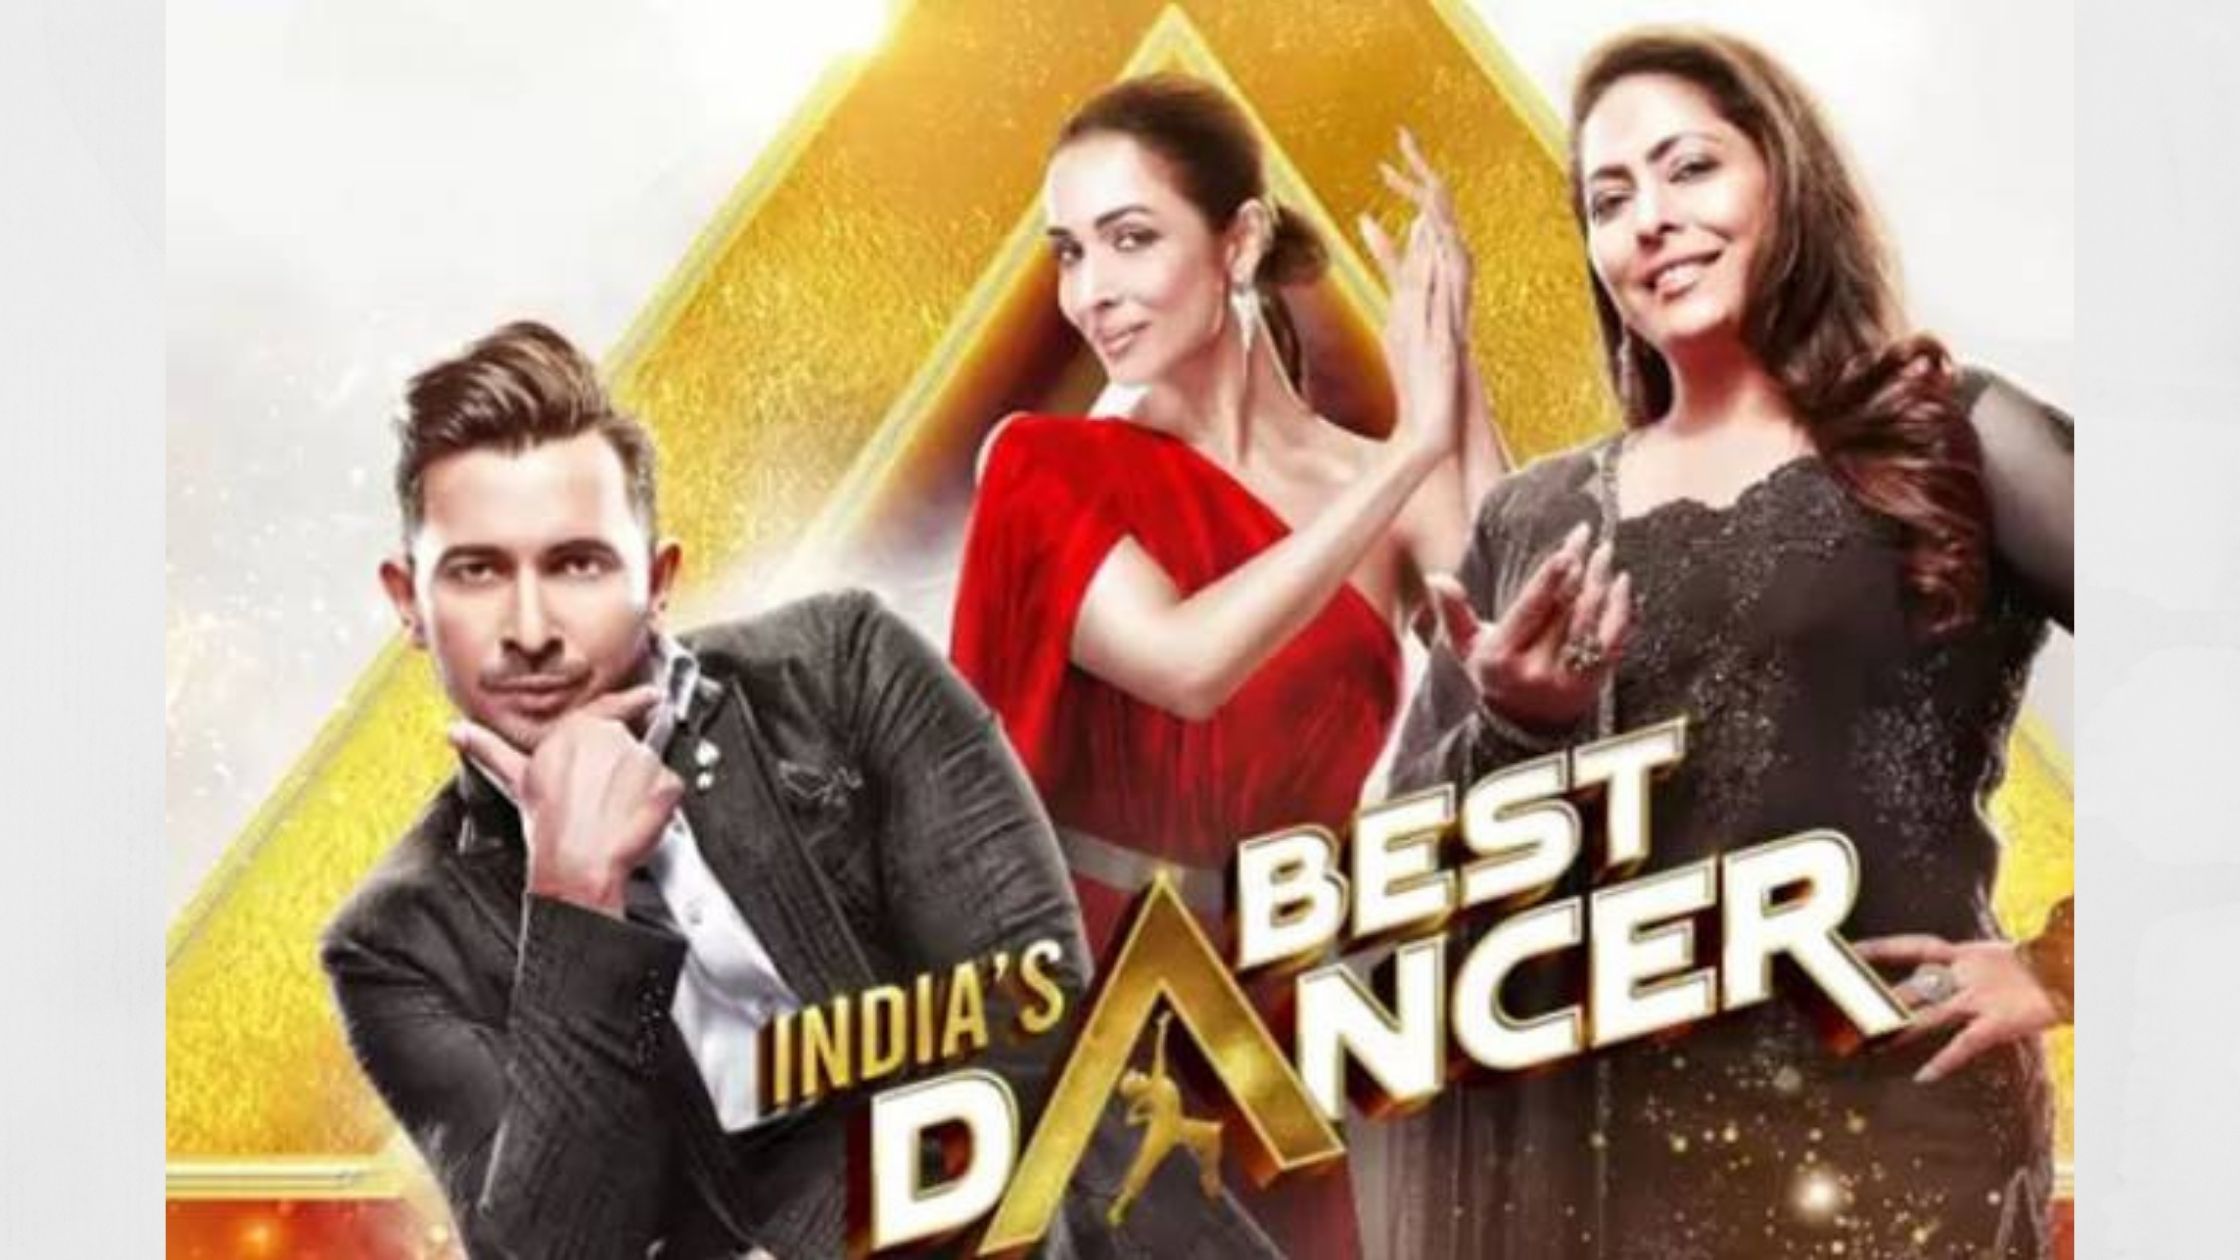 India's best dancer finalist